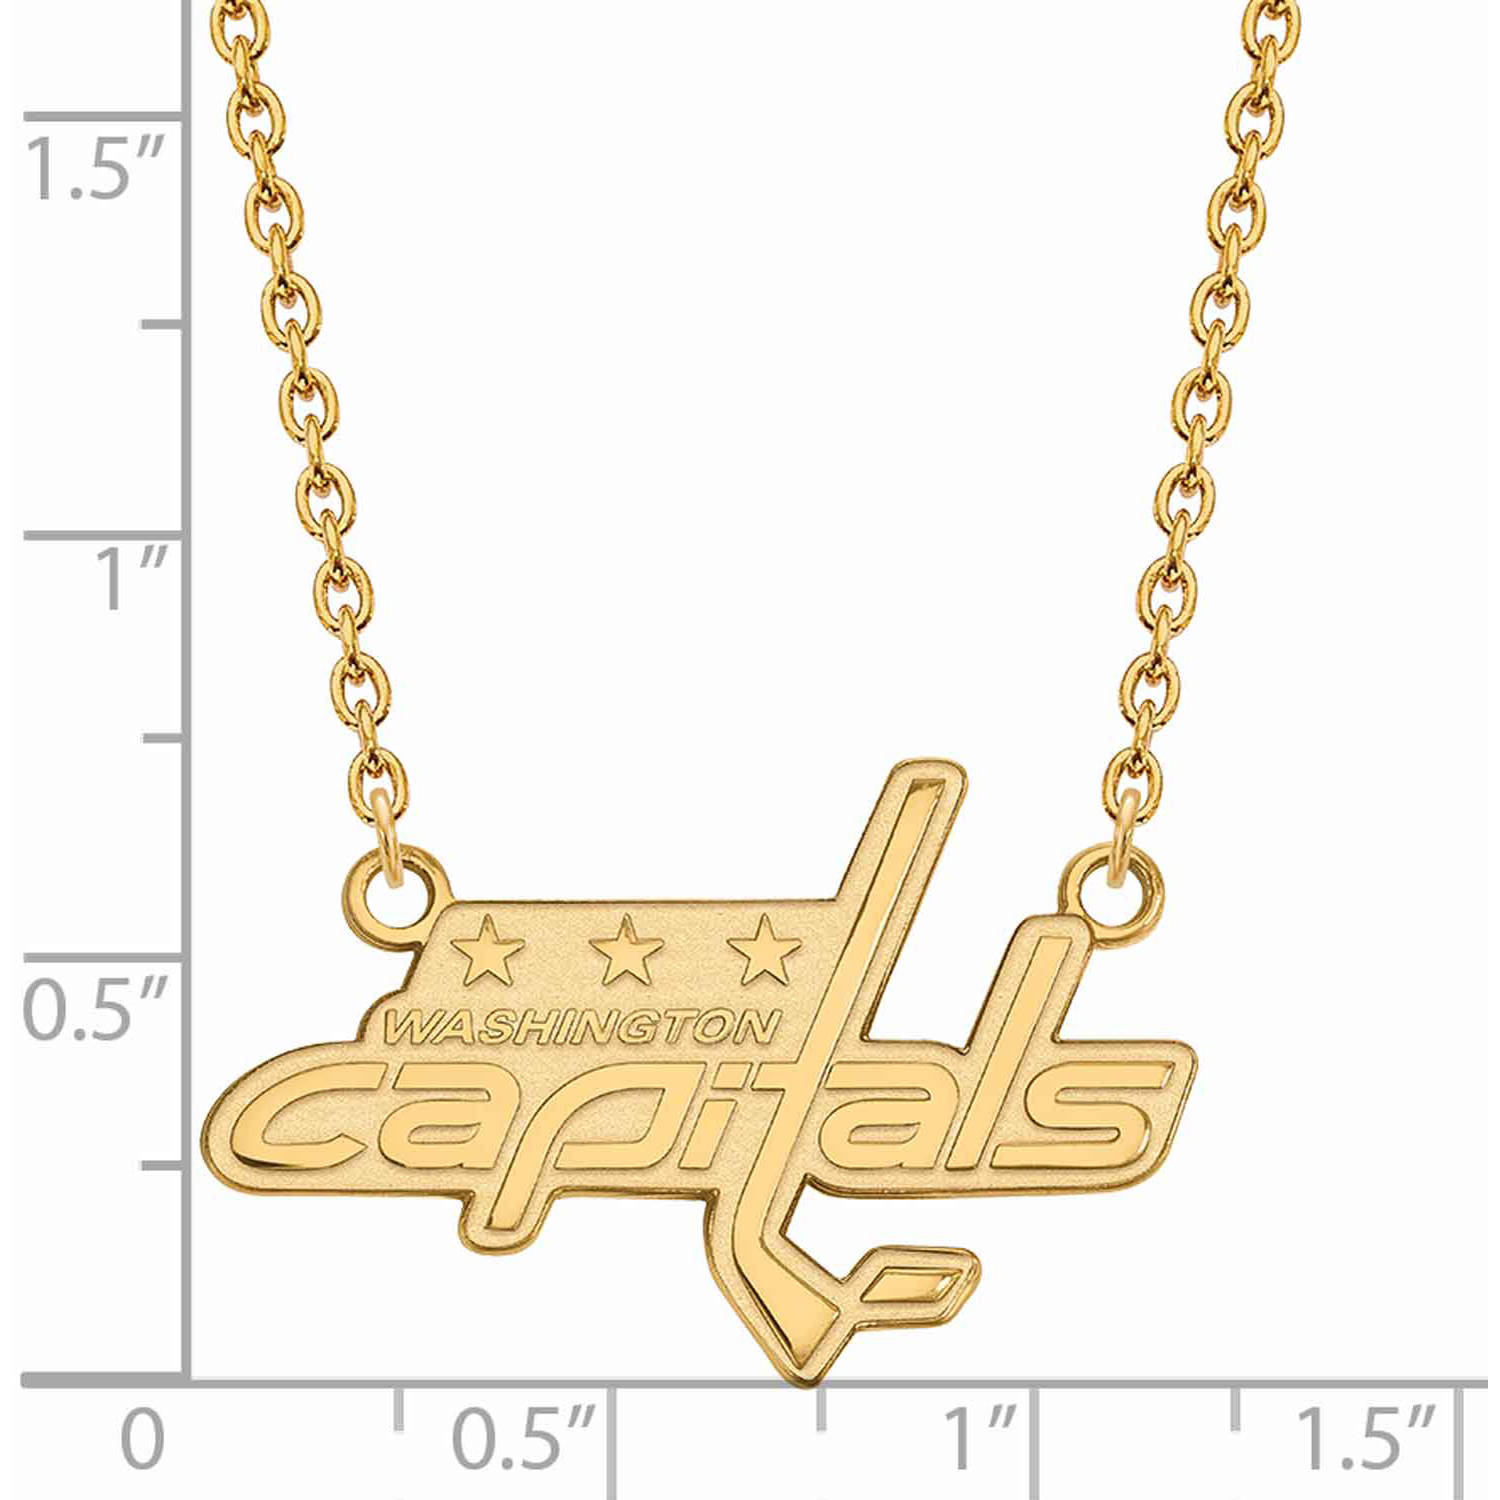 LogoArt 14 Karat Yellow Gold NHL Washington Capitals Large Pendant with Necklace - image 2 of 5